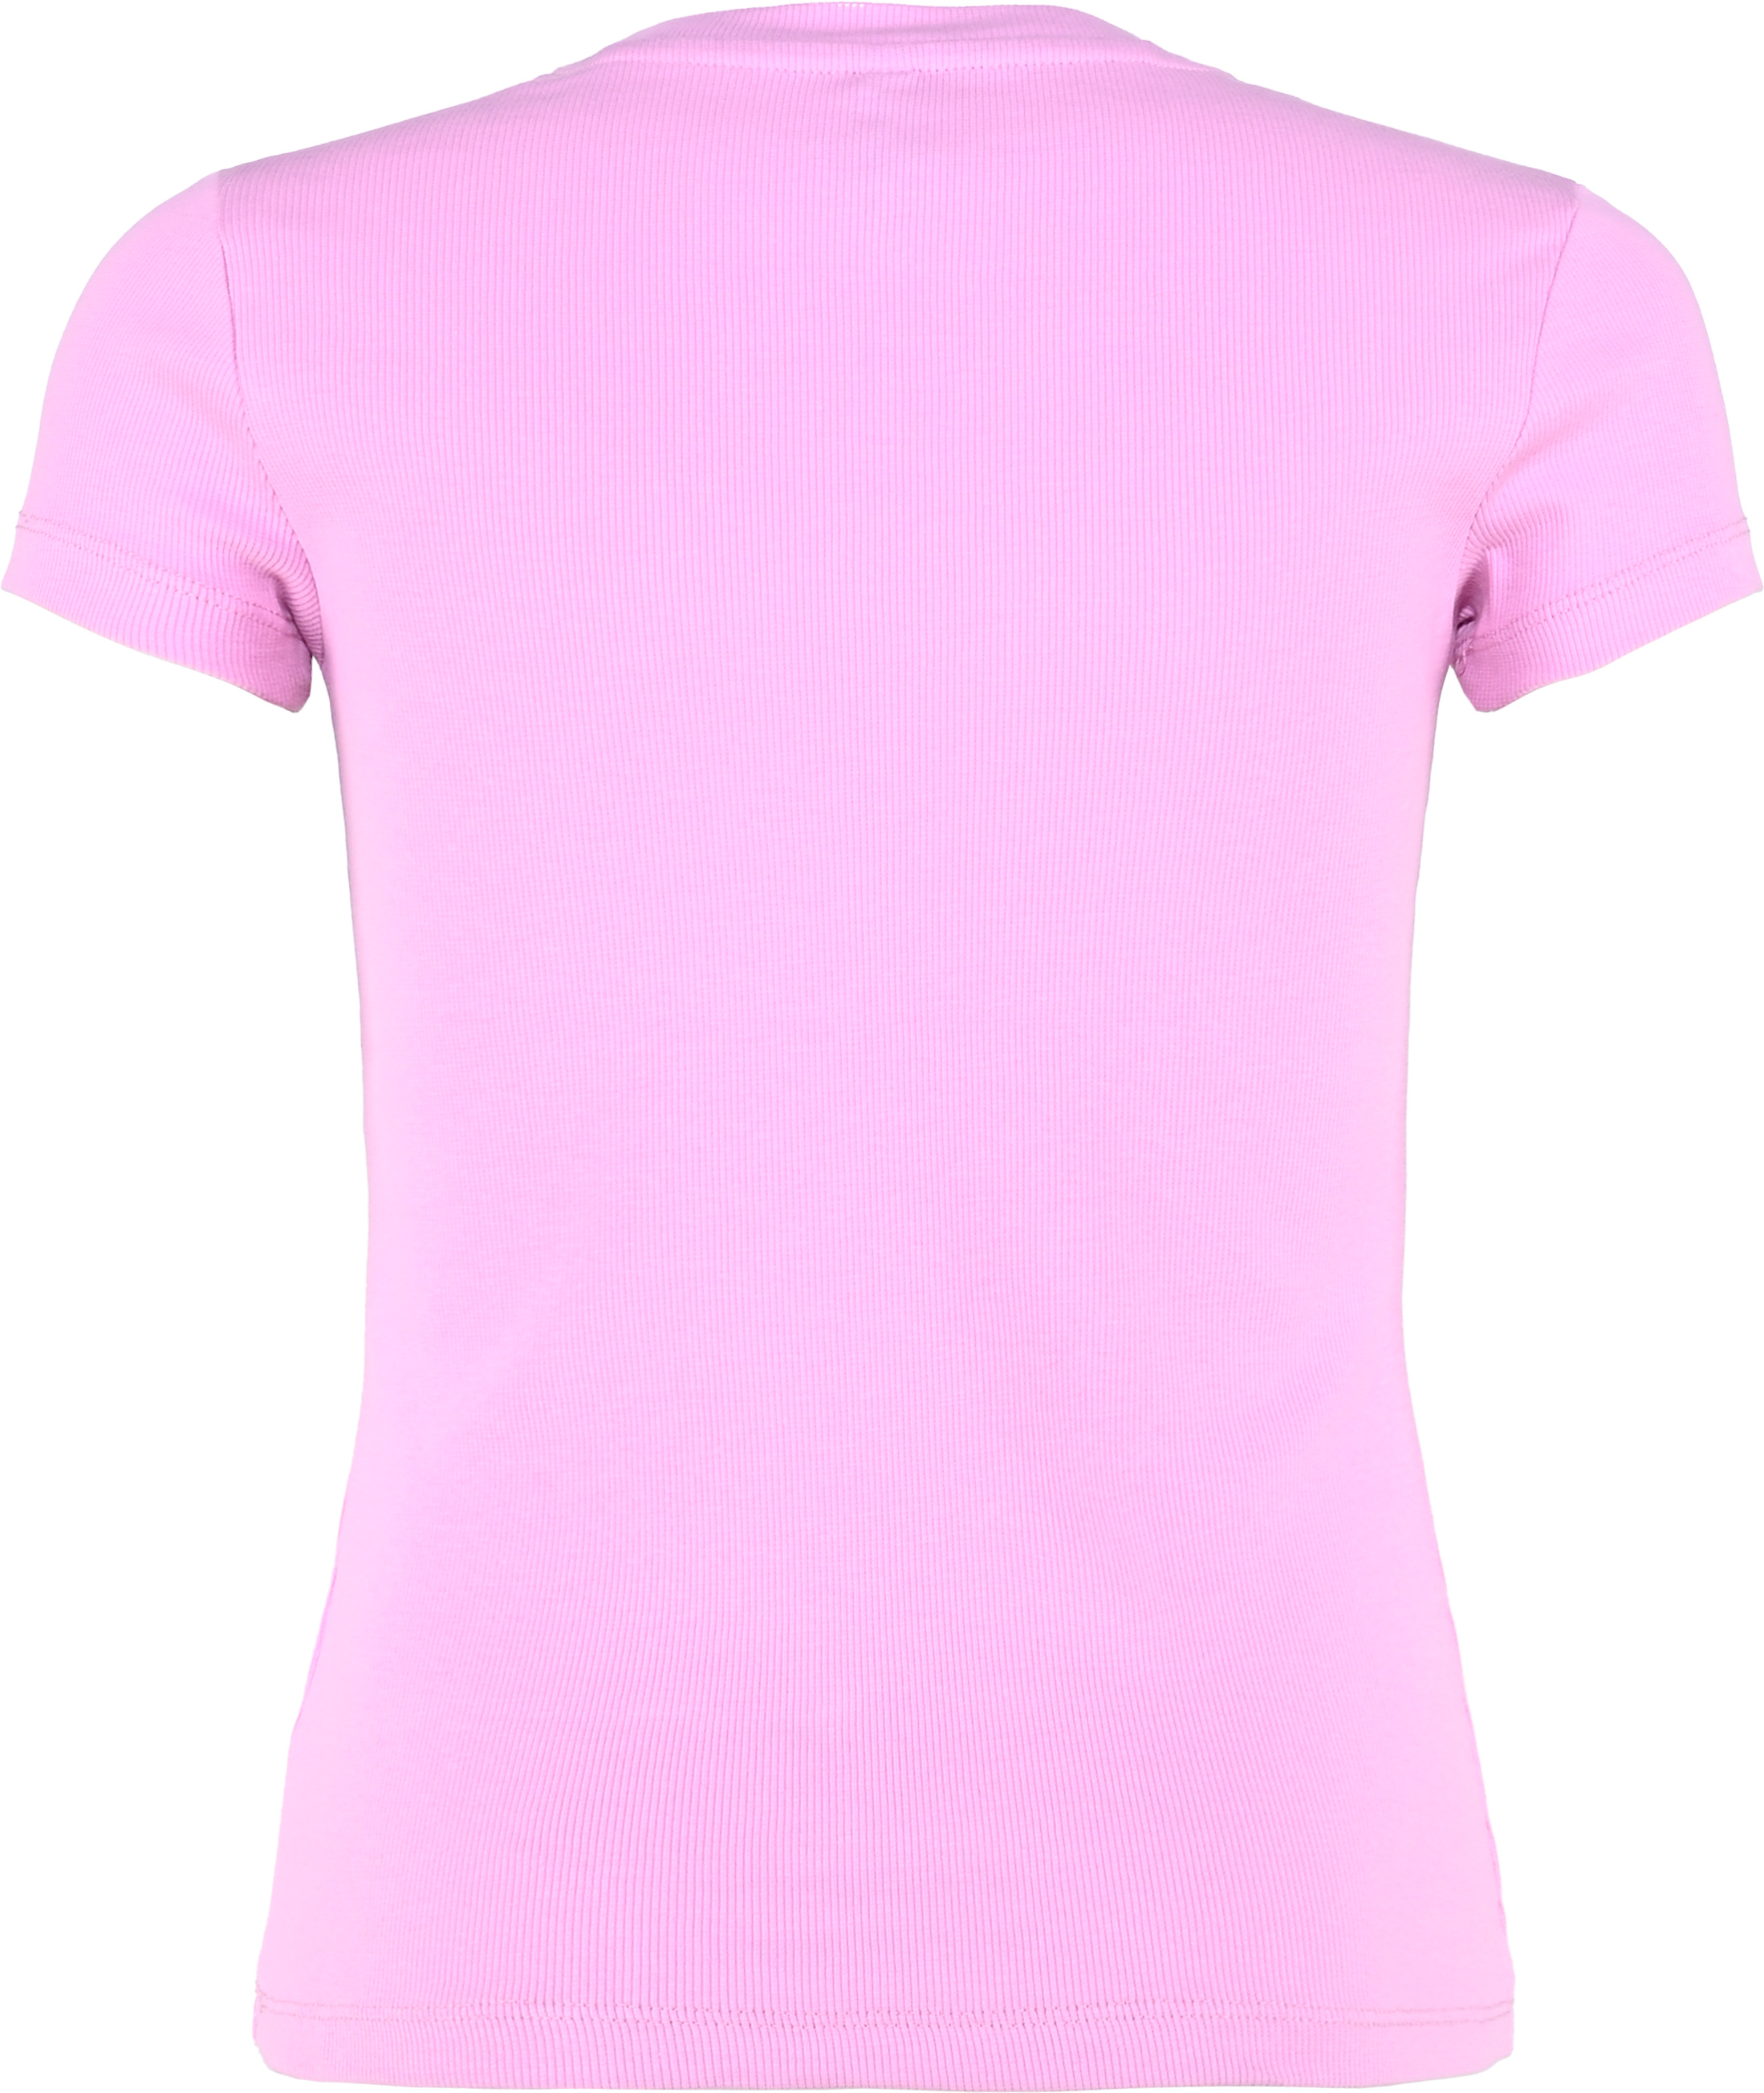 5771-Girls T-Shirt